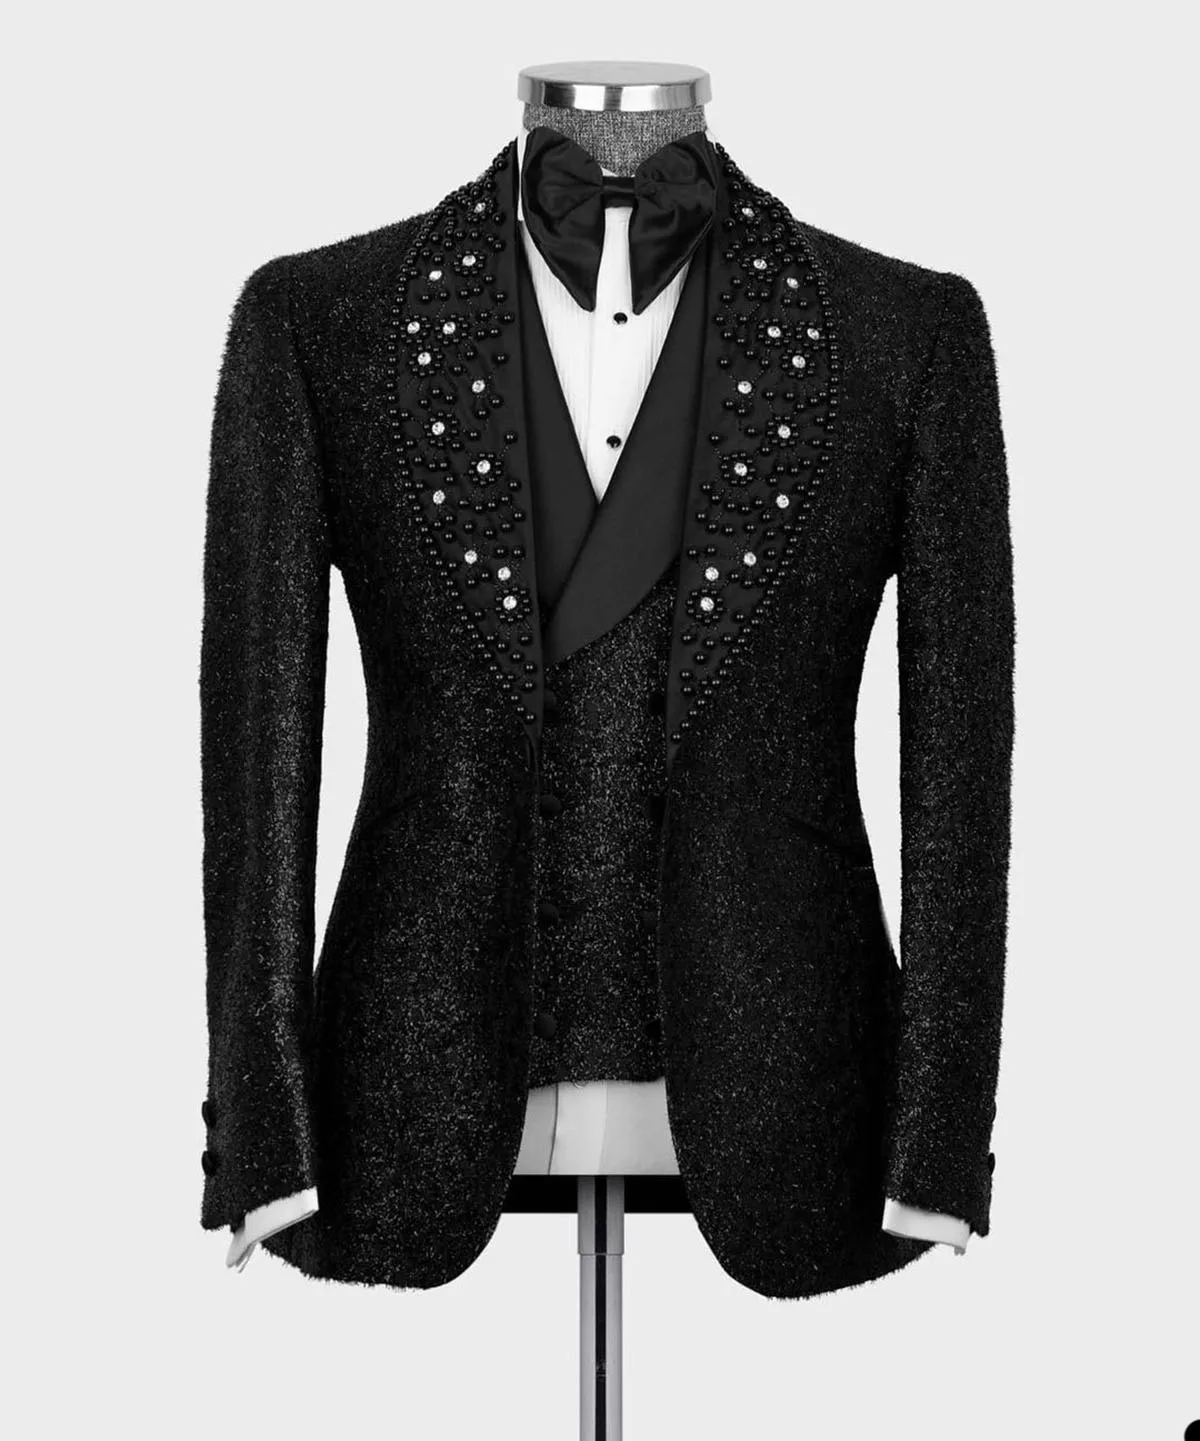 Moonuy Charm Mens Suits Sequin Blazer Tailcoat Jacket Goth Steampunk Uniform Fit Suit Praty Outwear Coat Tuxedo Sequin Jacket 